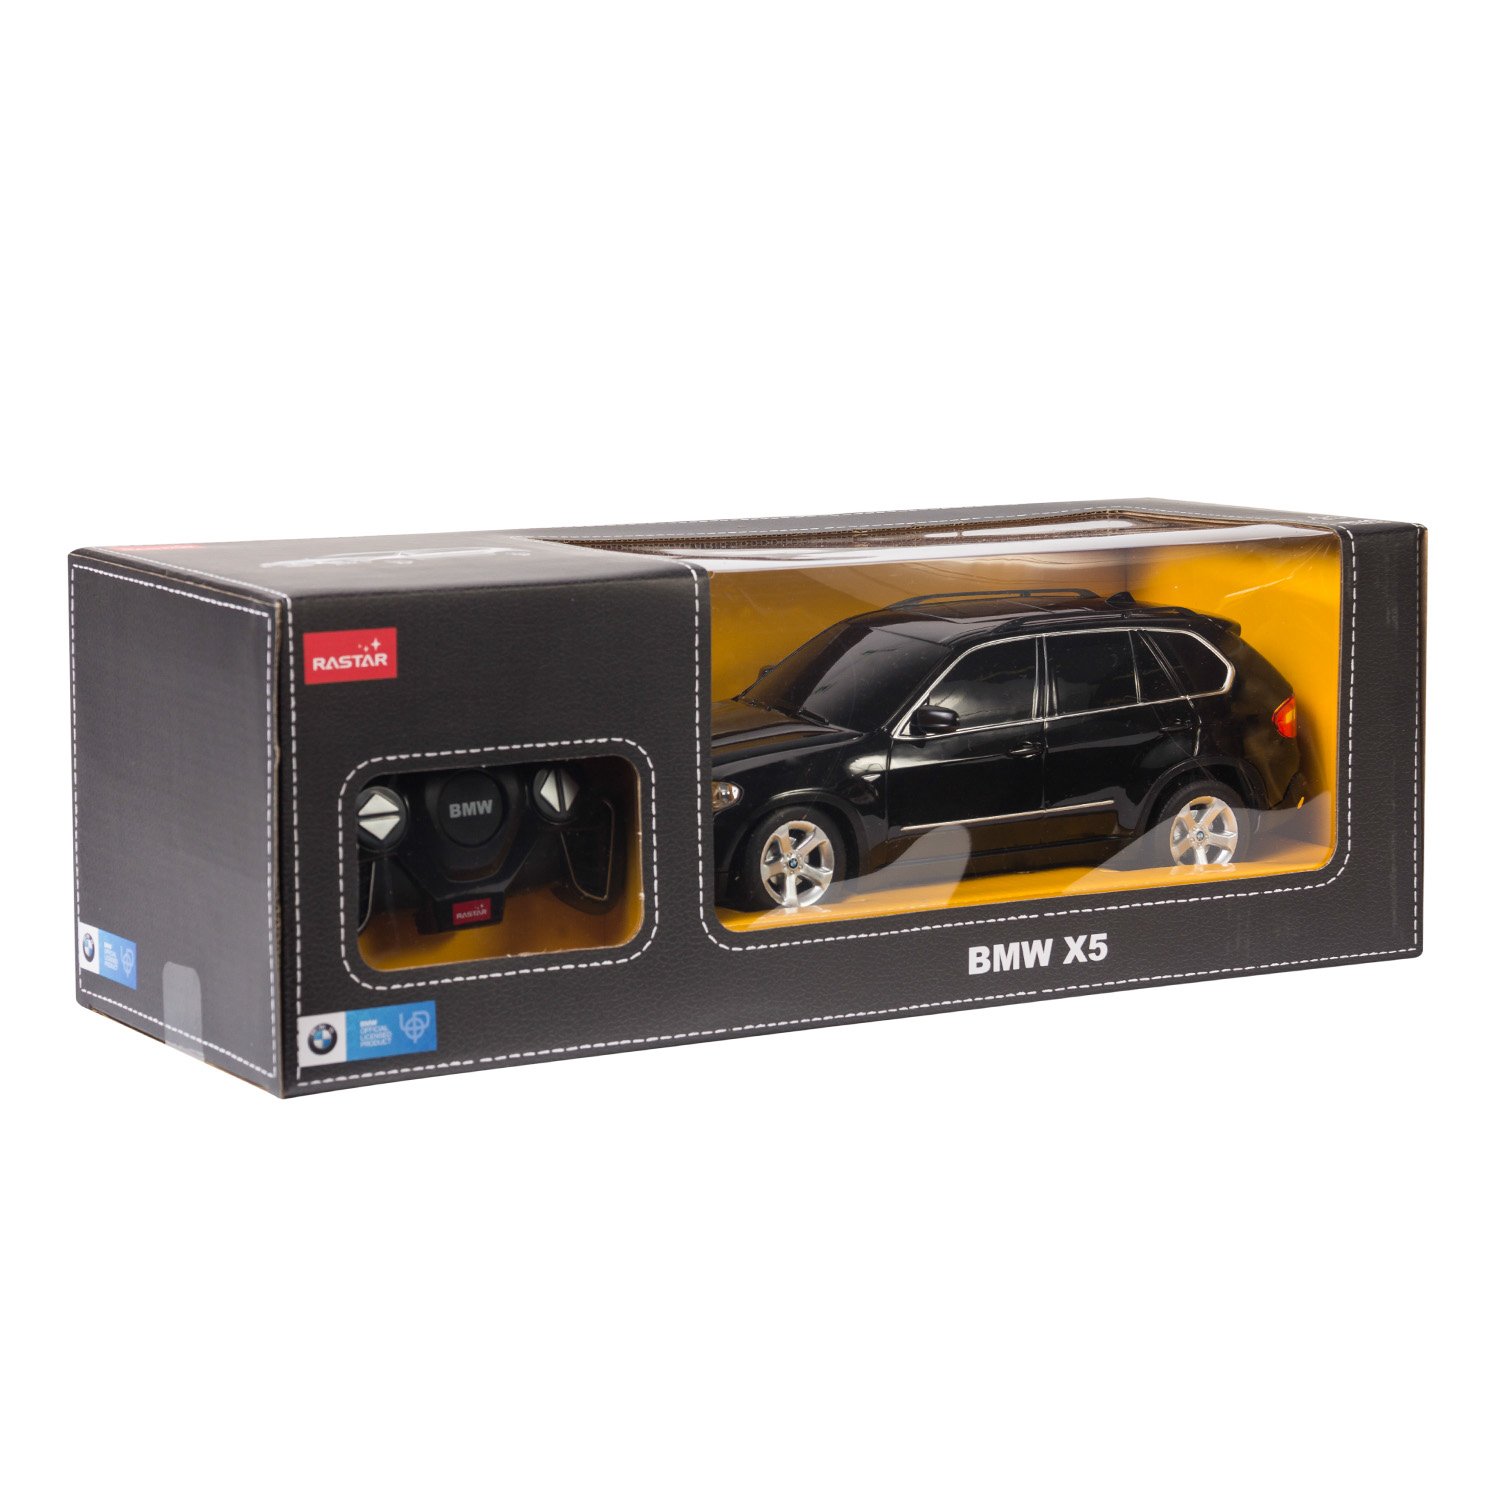 Машинка р/у Rastar BMW X5 1:18 черная